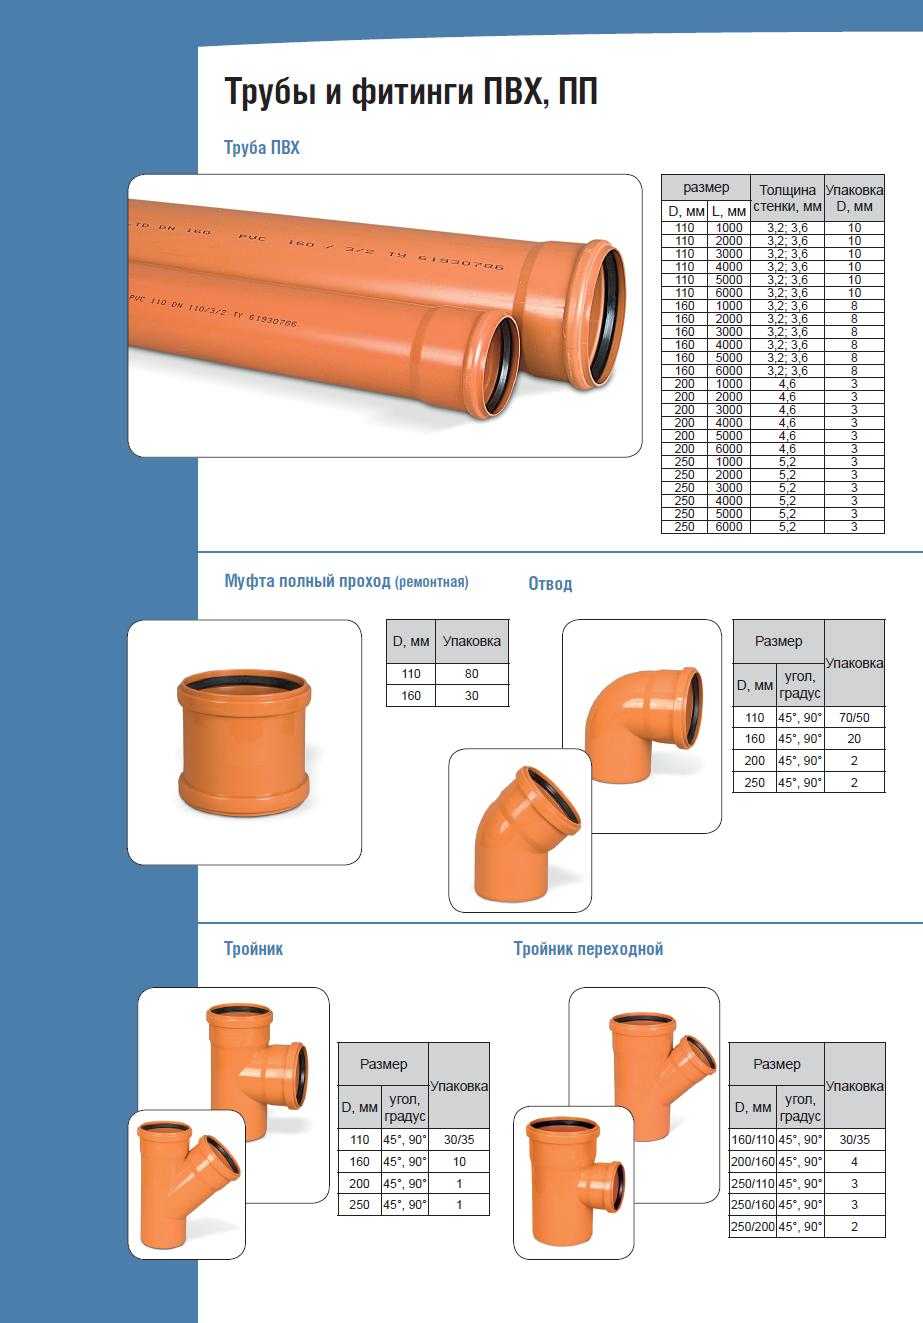 Характеристики и преимущества рыжей канализационной трубы, правила установки